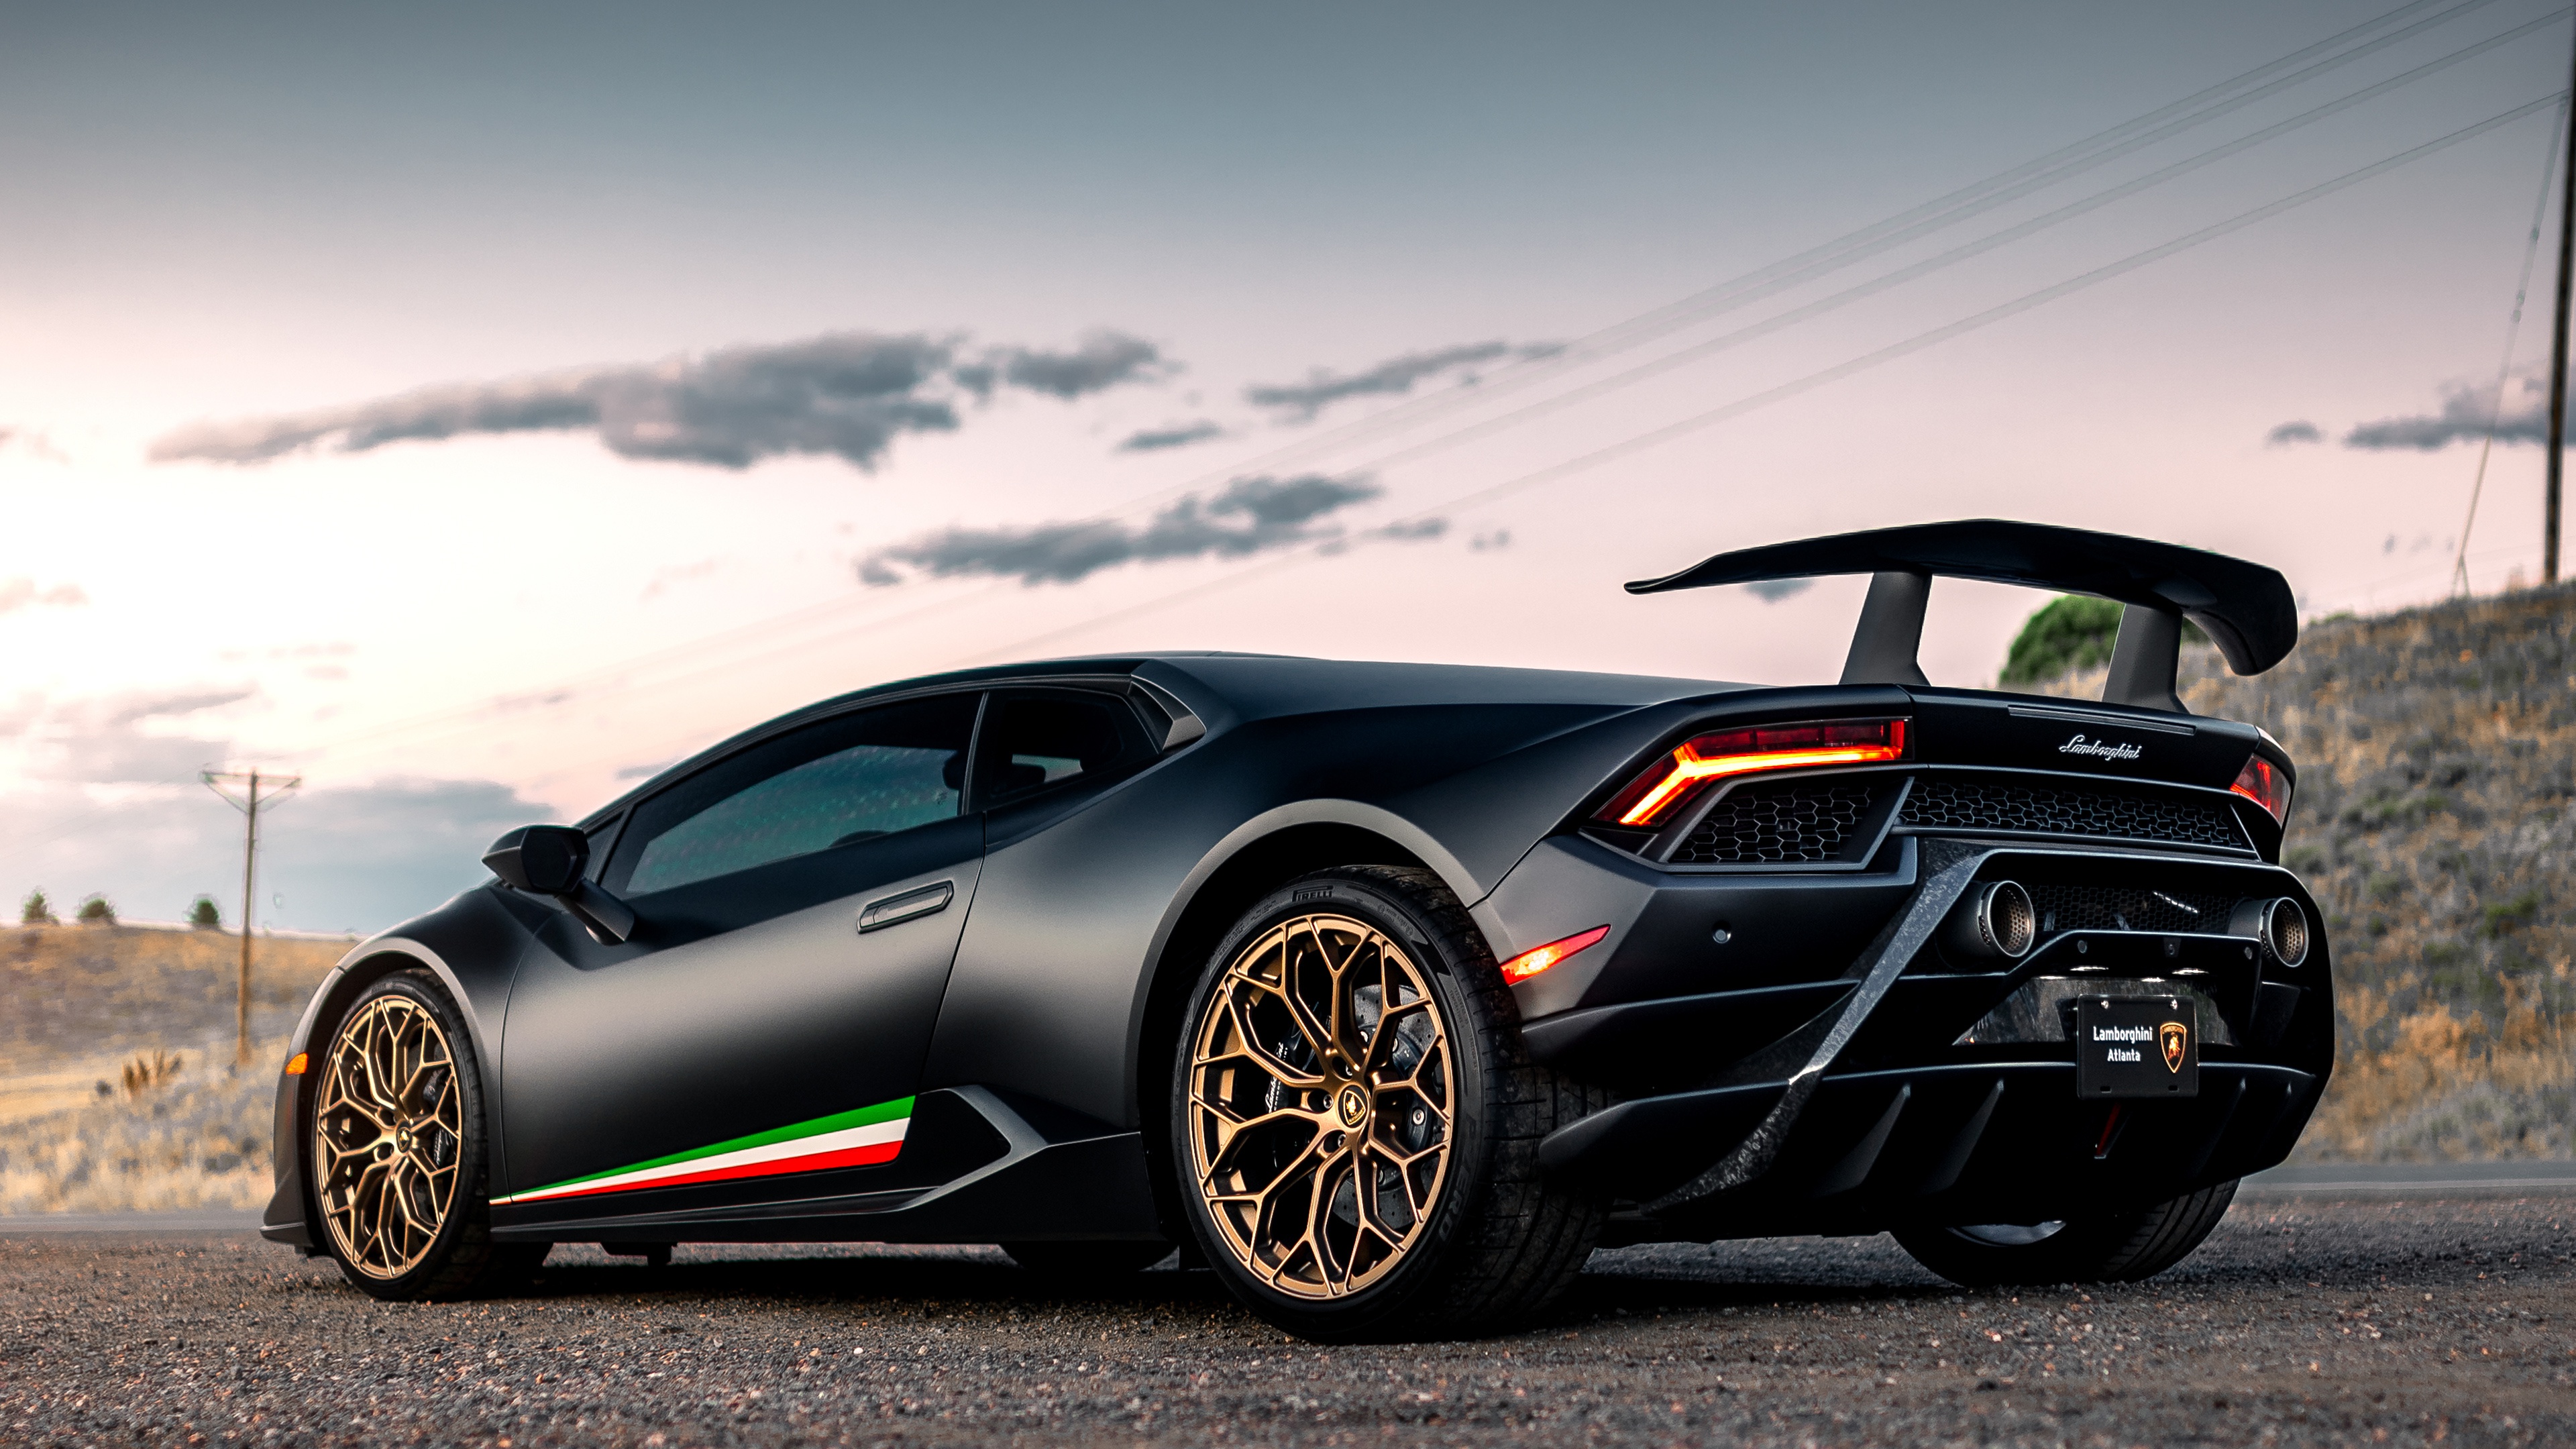 Fondos de Pantalla 3840x2160 Lamborghini Performante Huracan 2019 Negro  Metálico Coches descargar imagenes